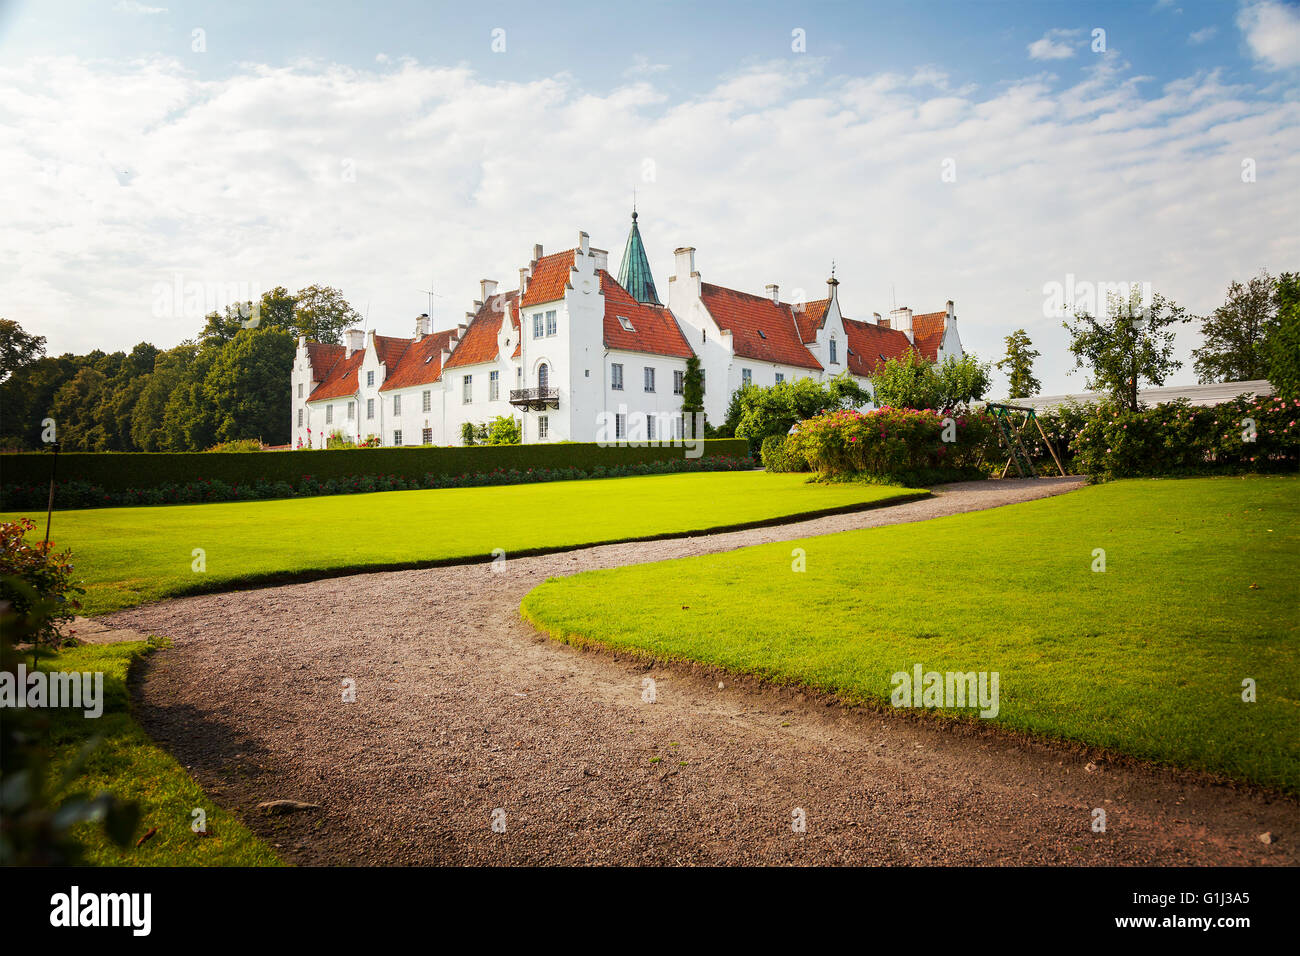 Bild des historischen Klosters Bosjokloster, Schweden. Beliebtes Touristenziel. Stockfoto